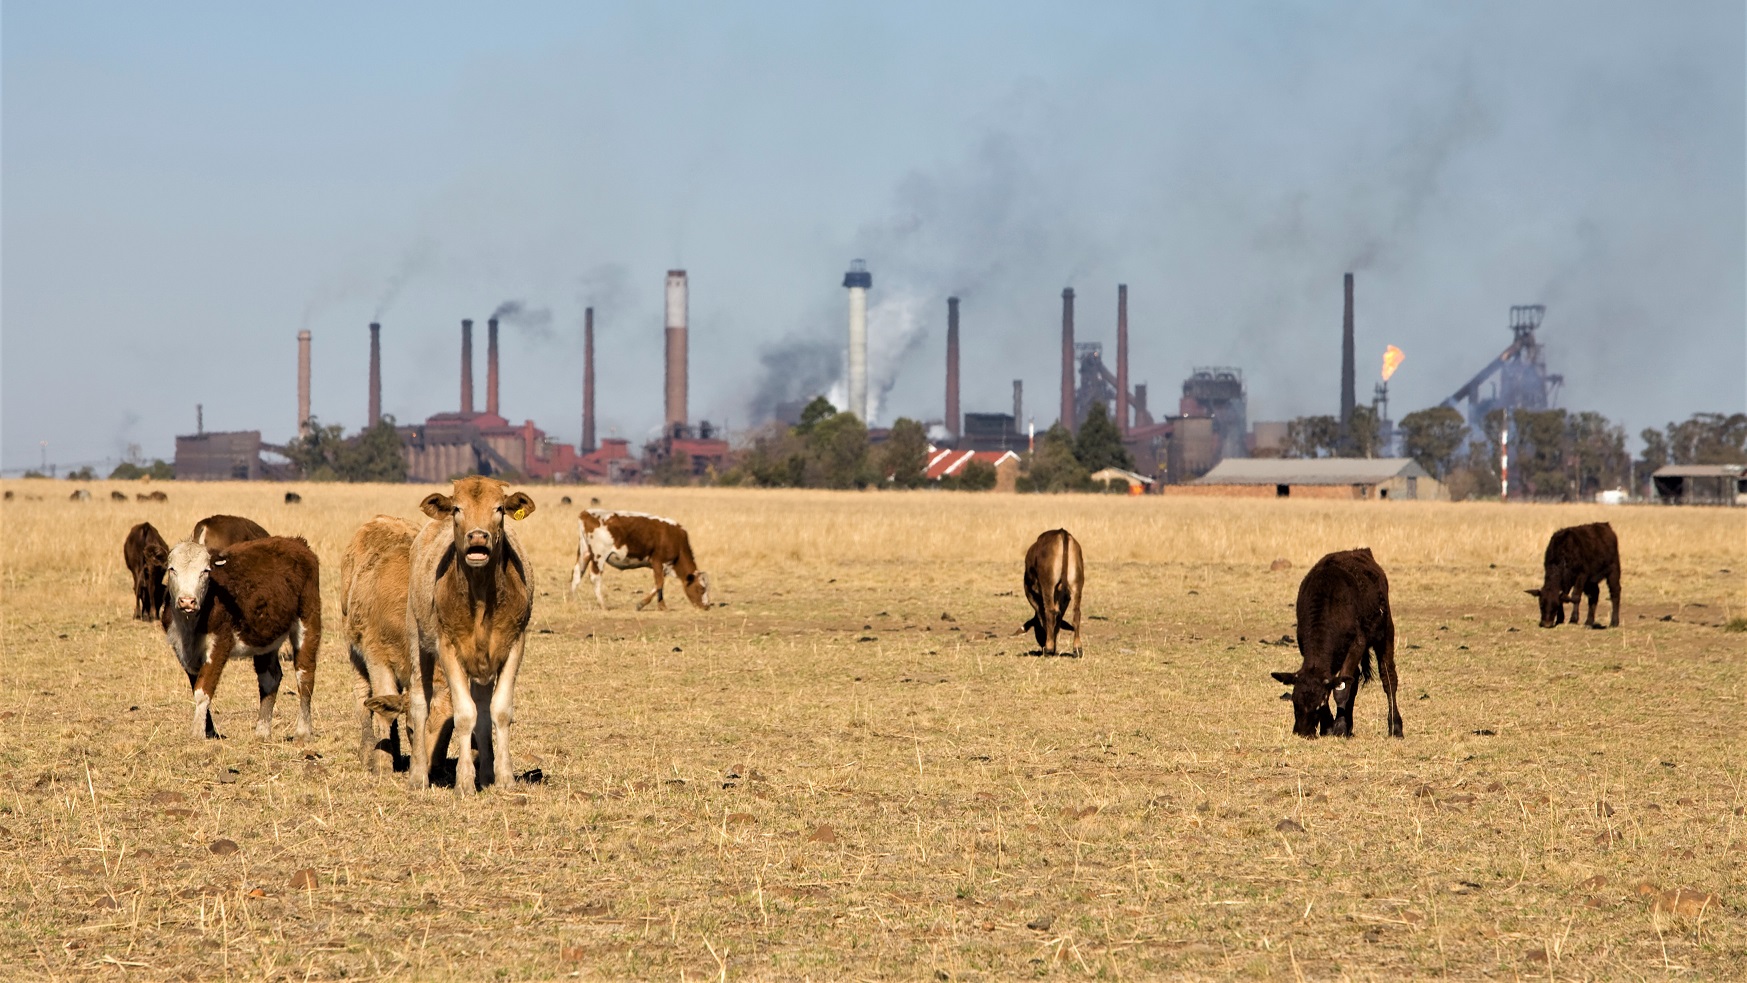 En flok køer står på en tør græsmark med industribygninger i baggrunden